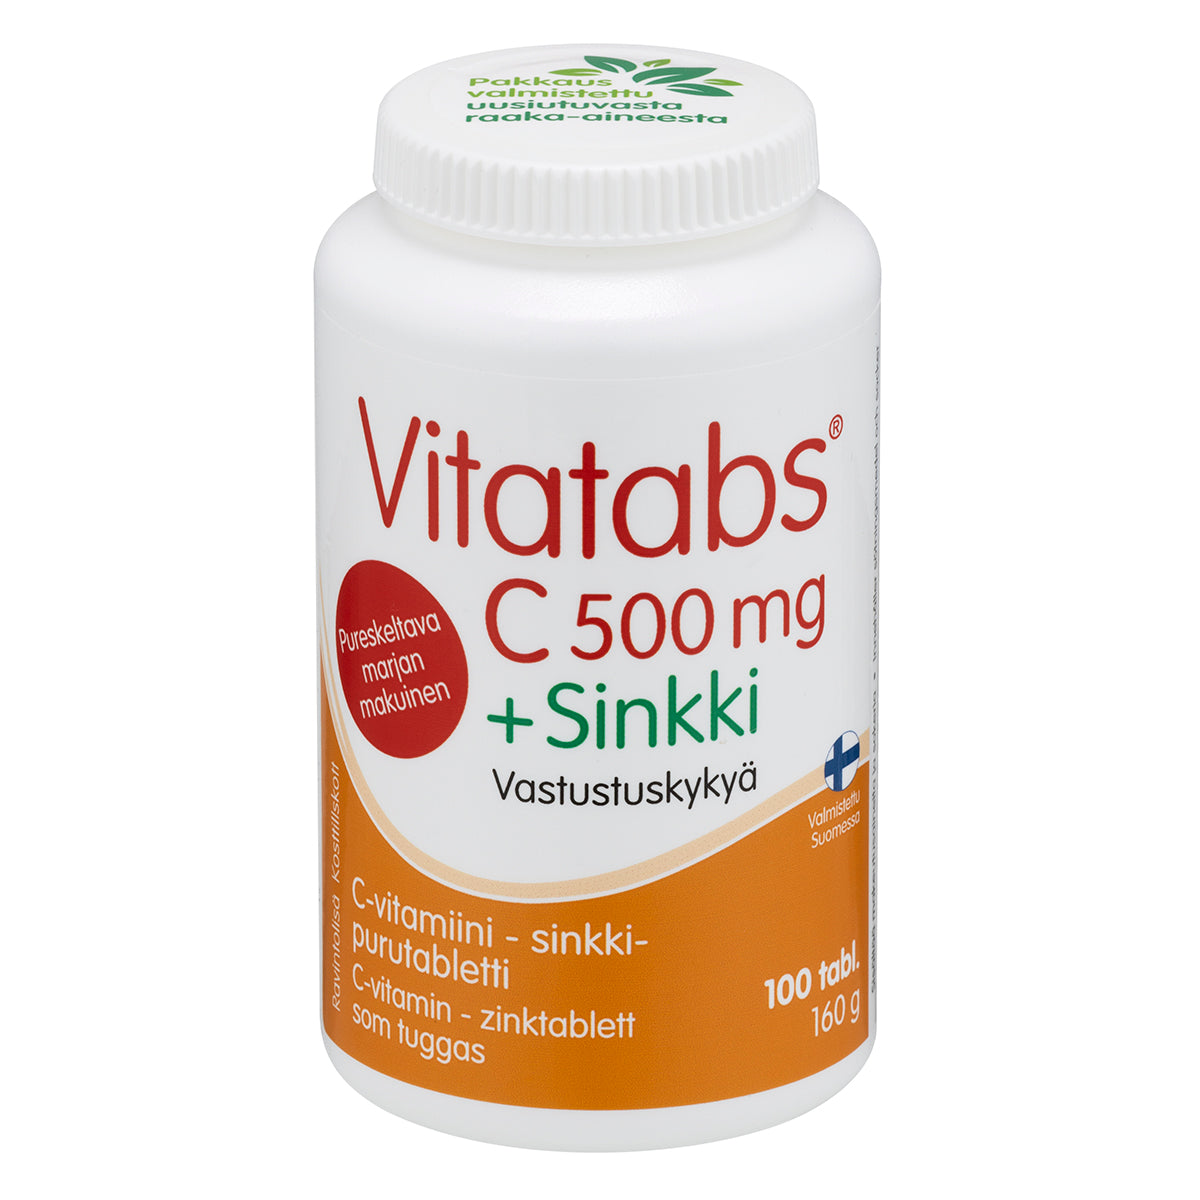 Vitatabs C 500 mg + Sinkki 100 purutabl. - poistuu